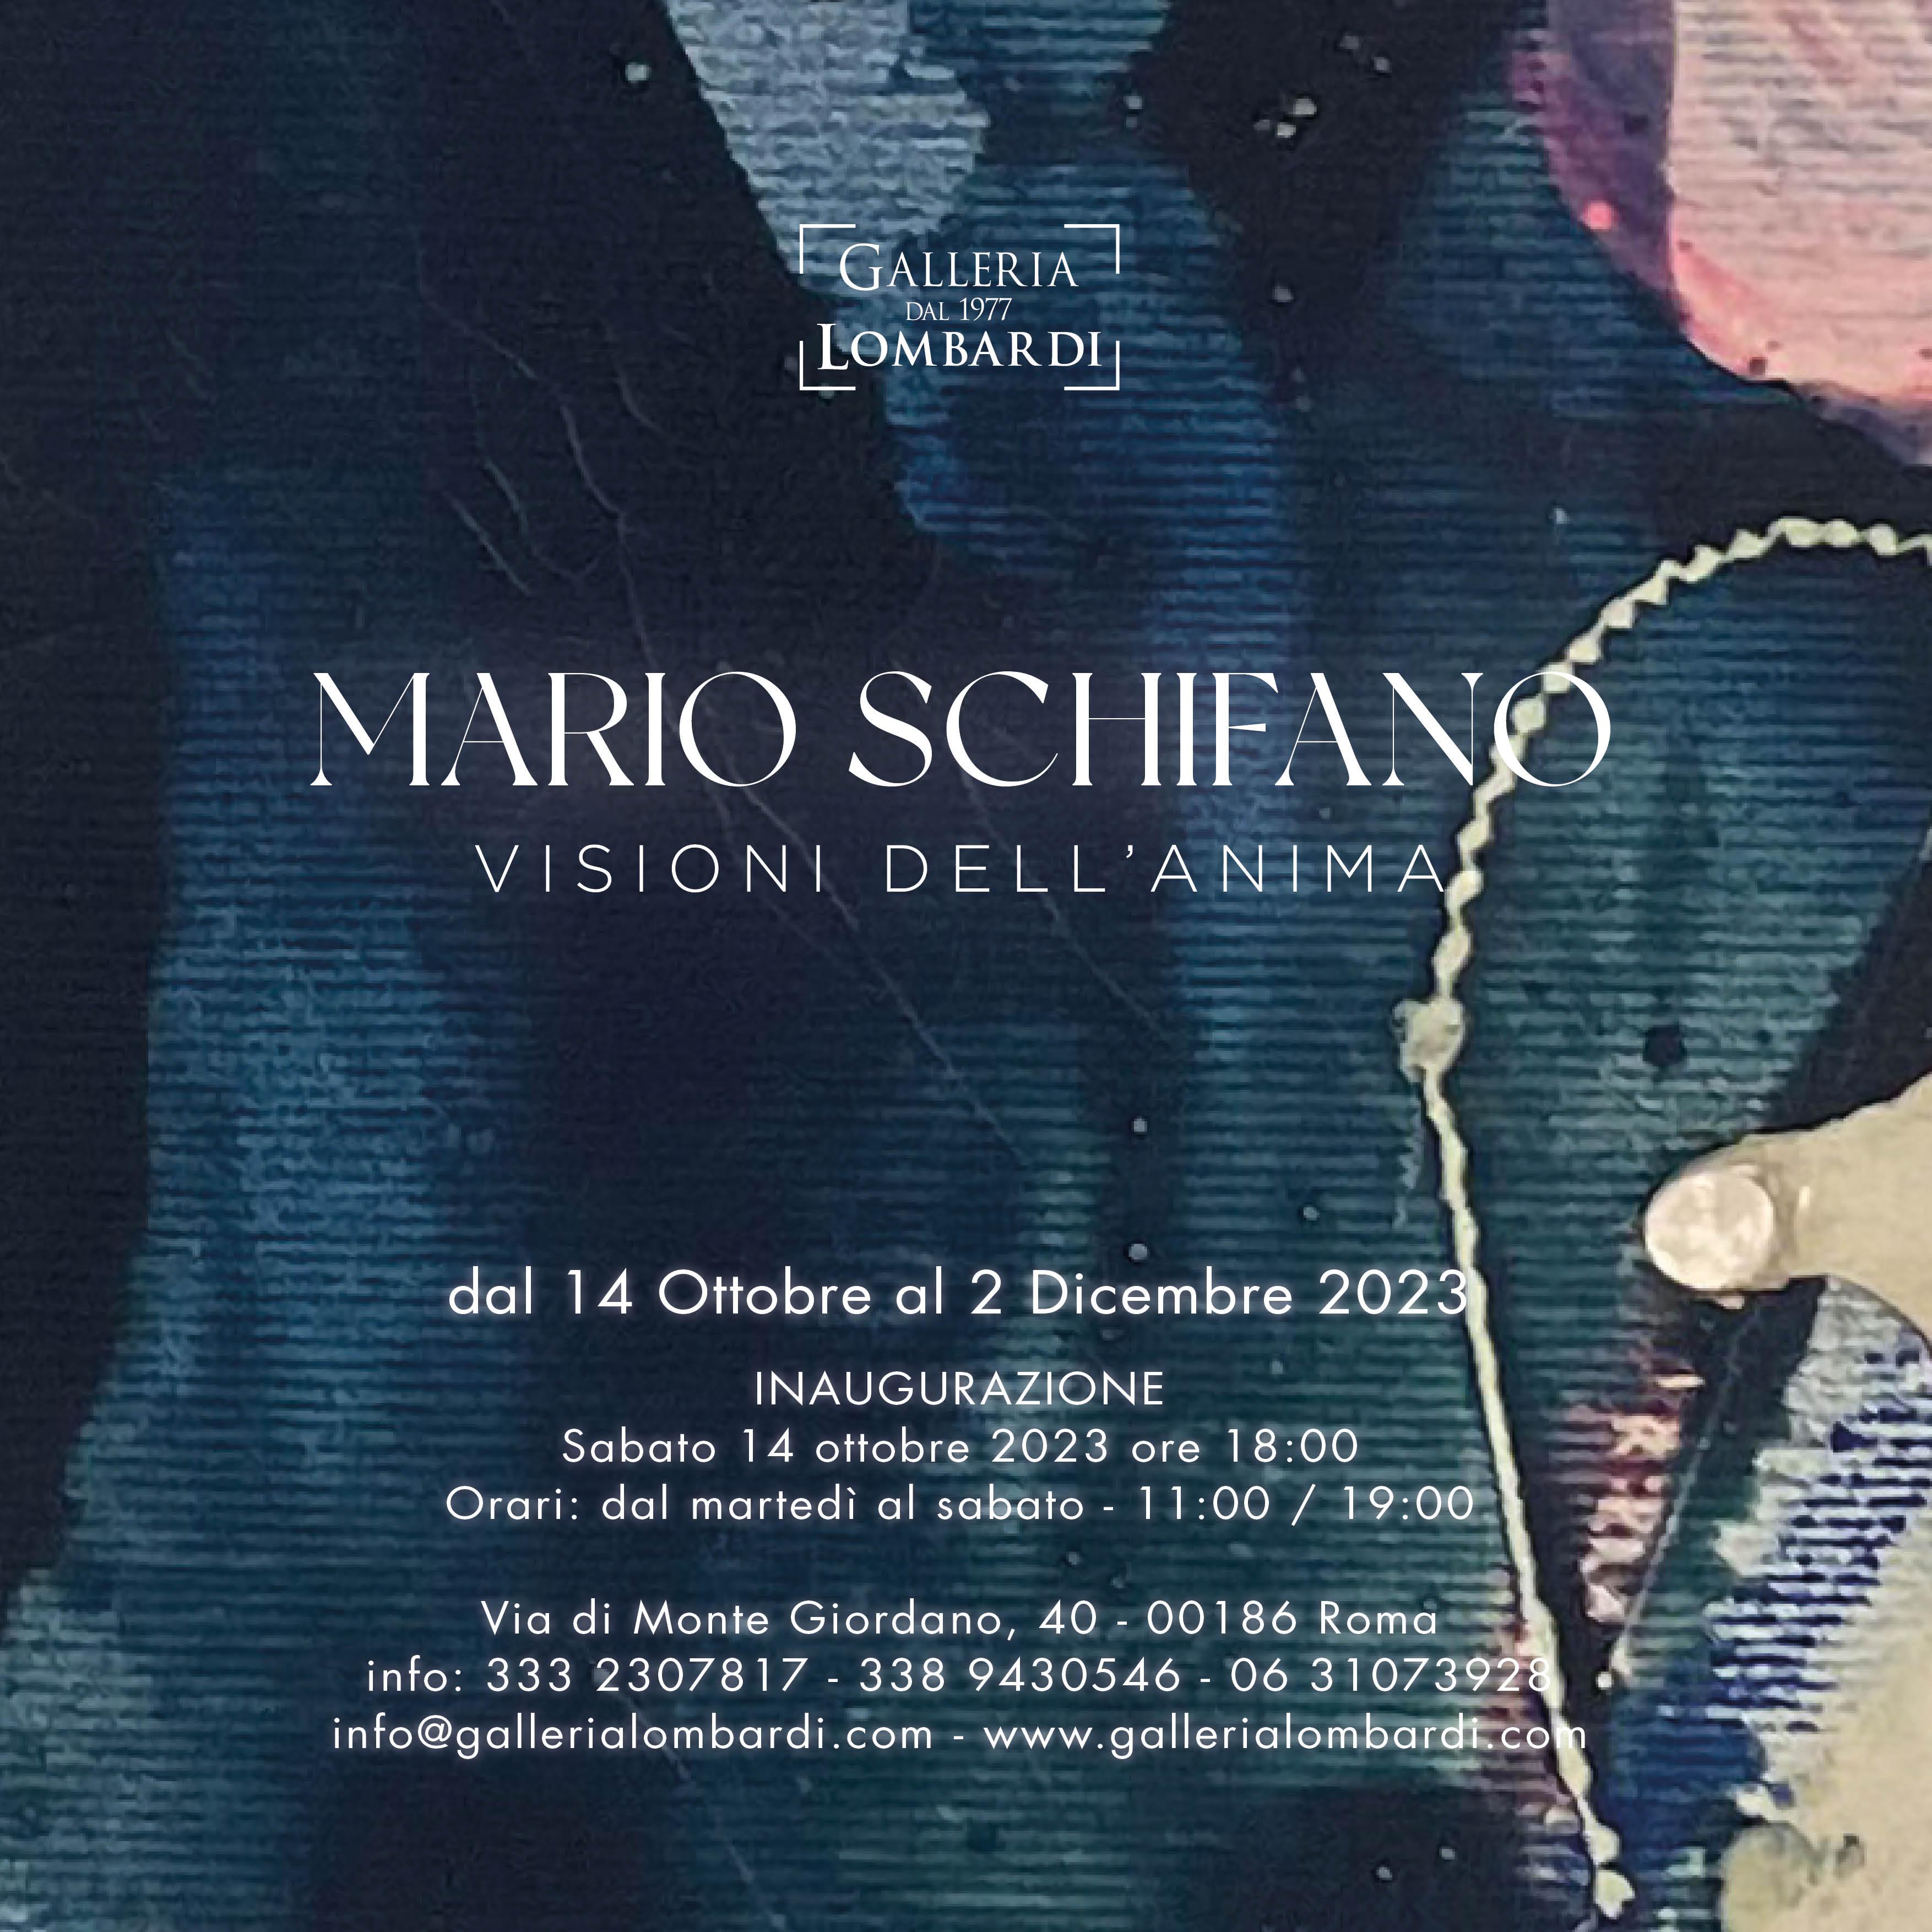 Mario Schifano Visioni dell' anima